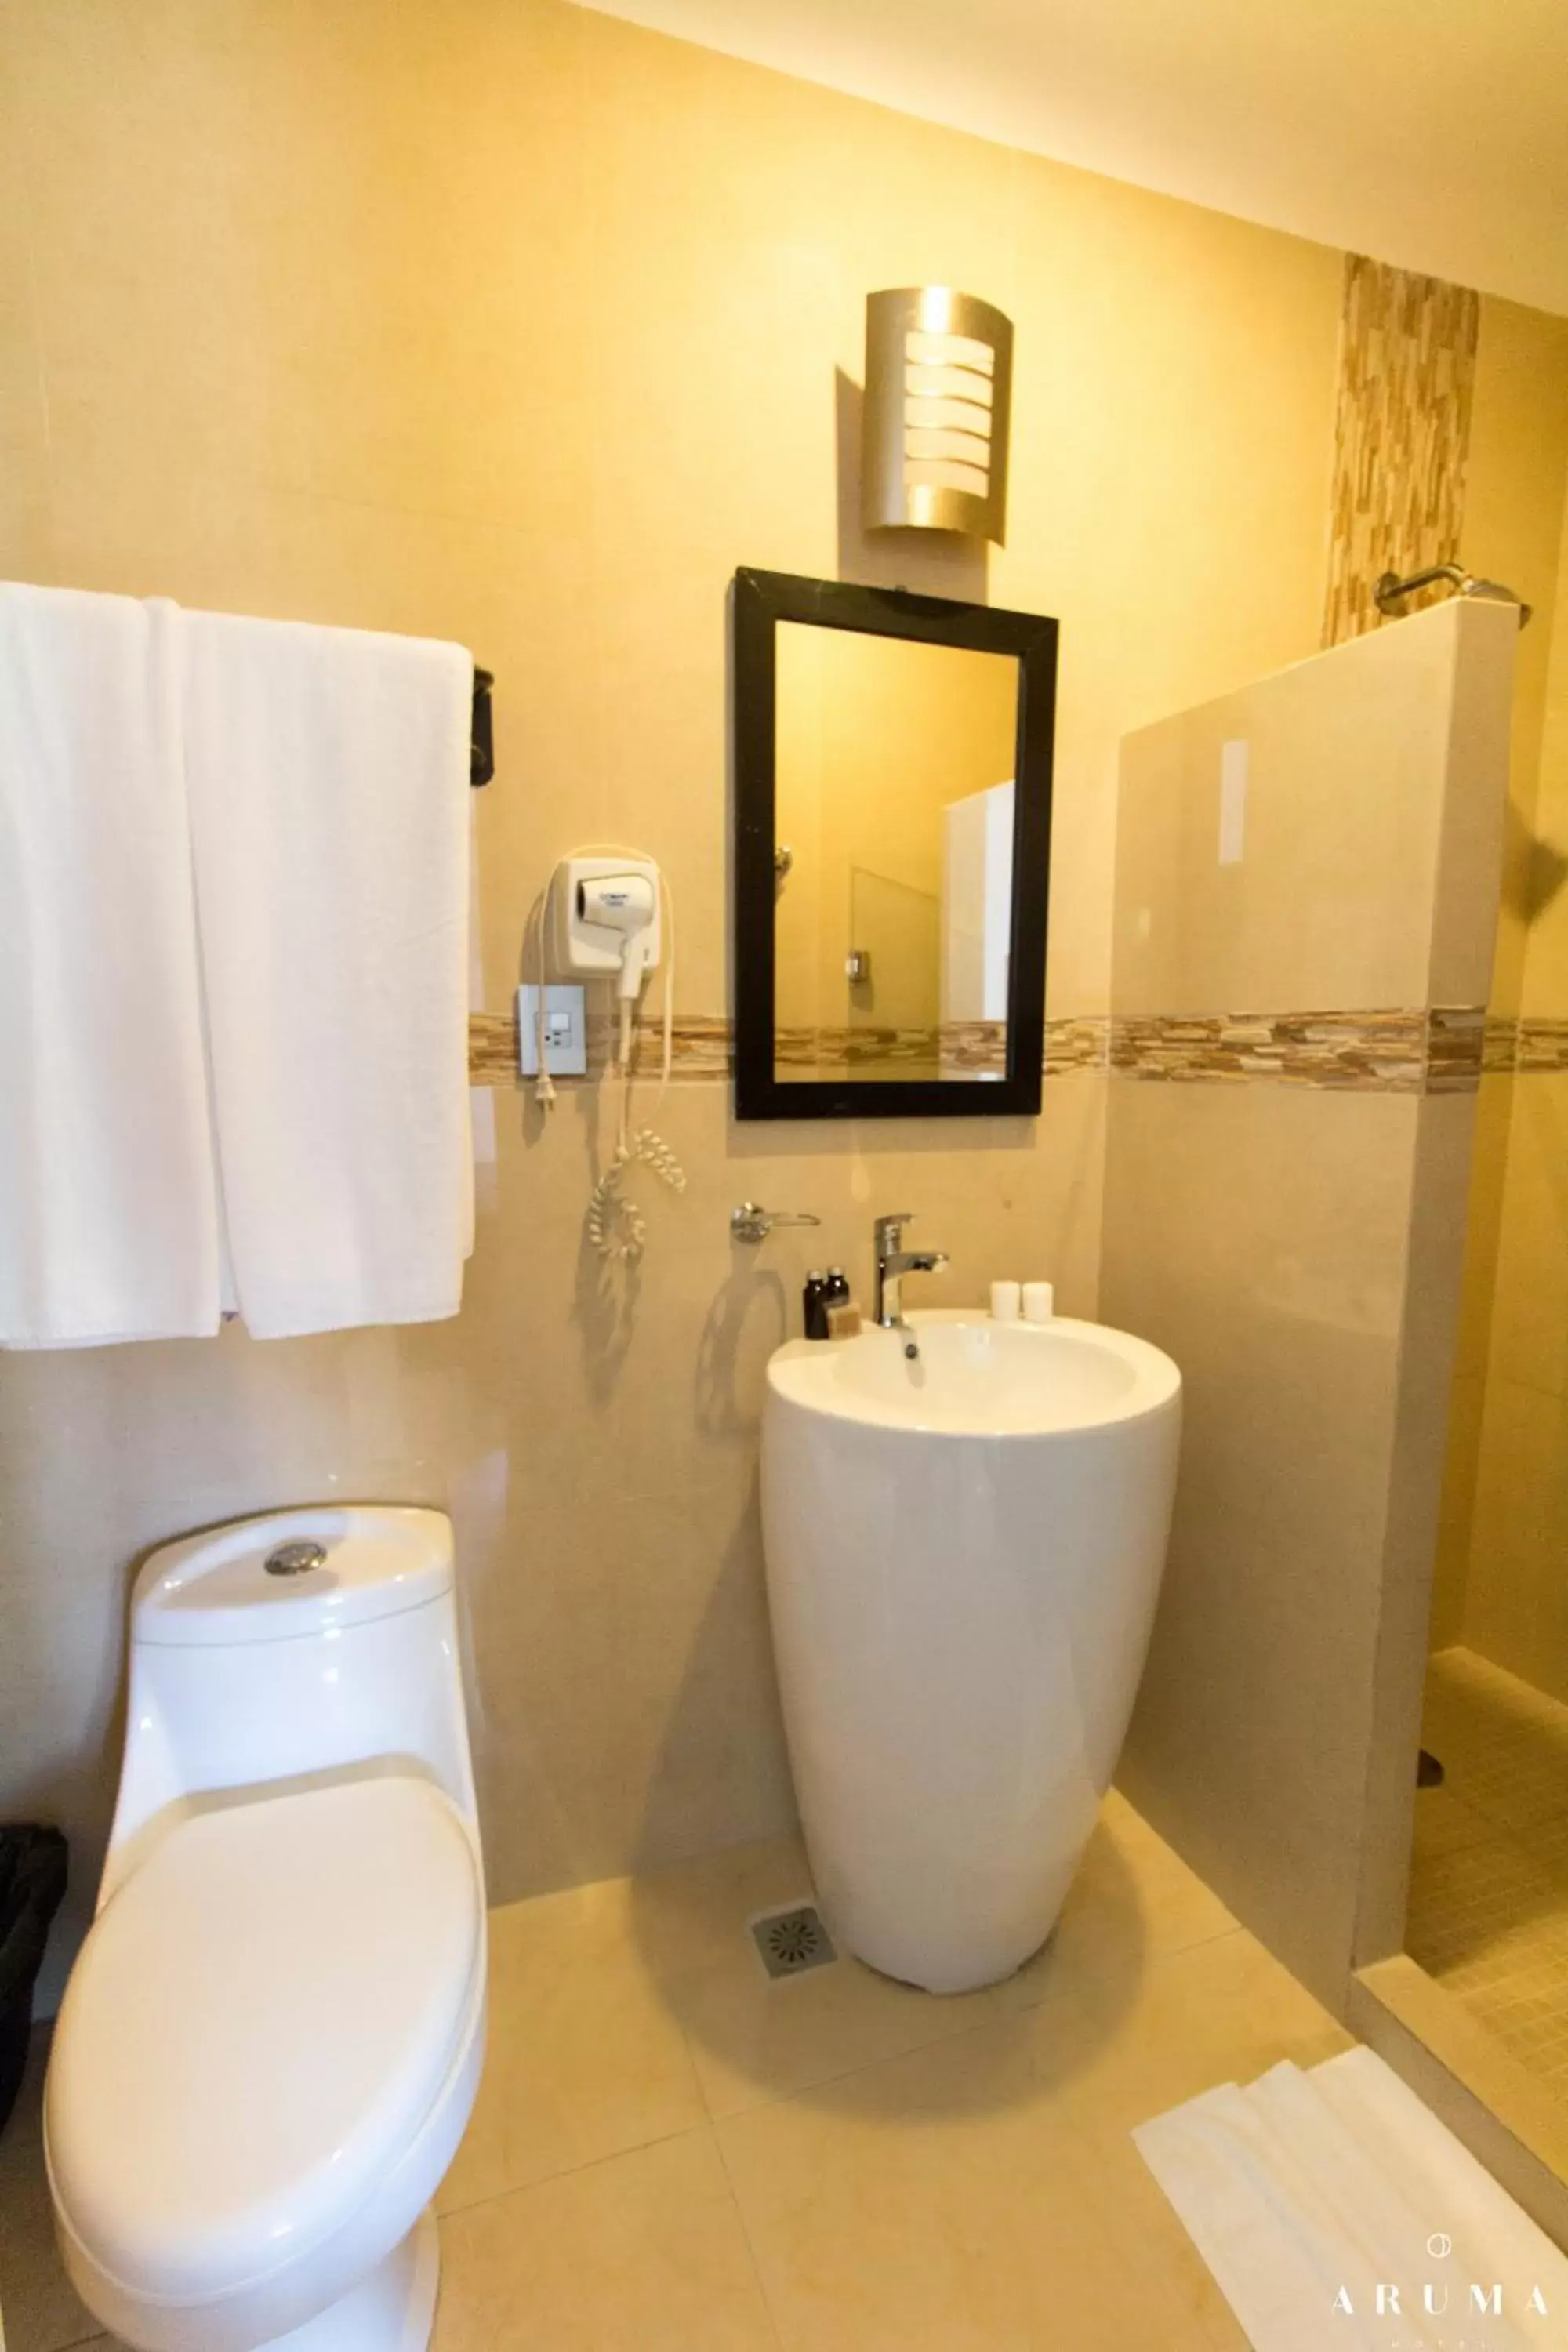 Bathroom in Aruma Hotel